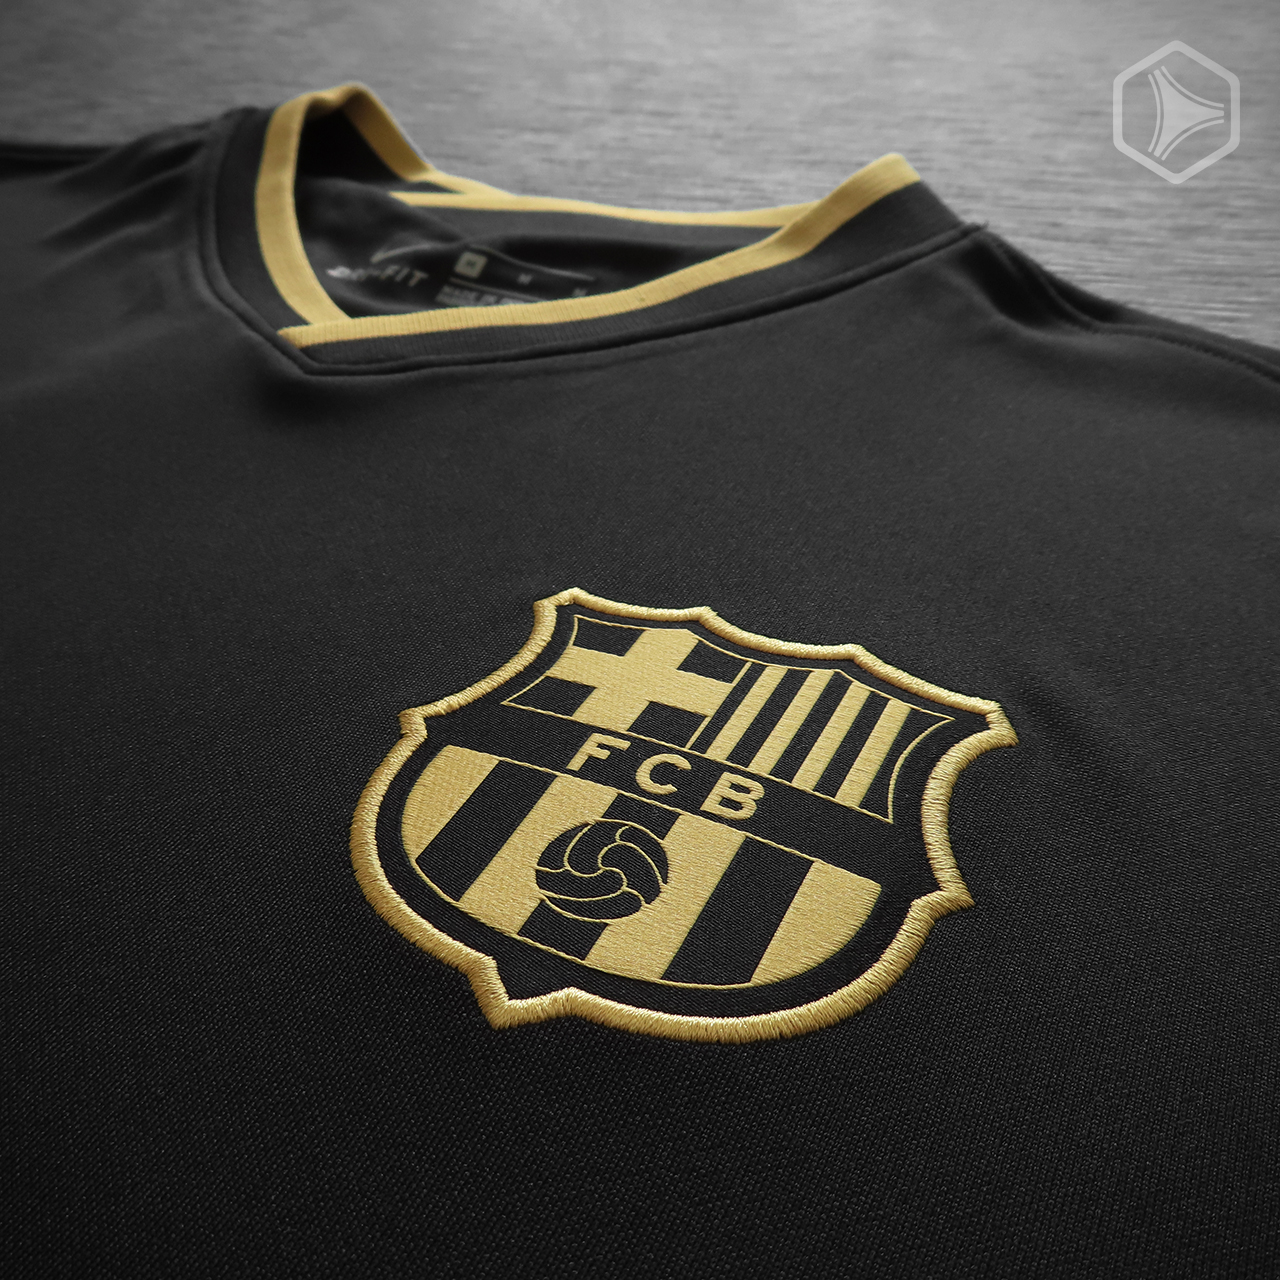 Camiseta alternativa Nike del FC Barcelona 2020 2021